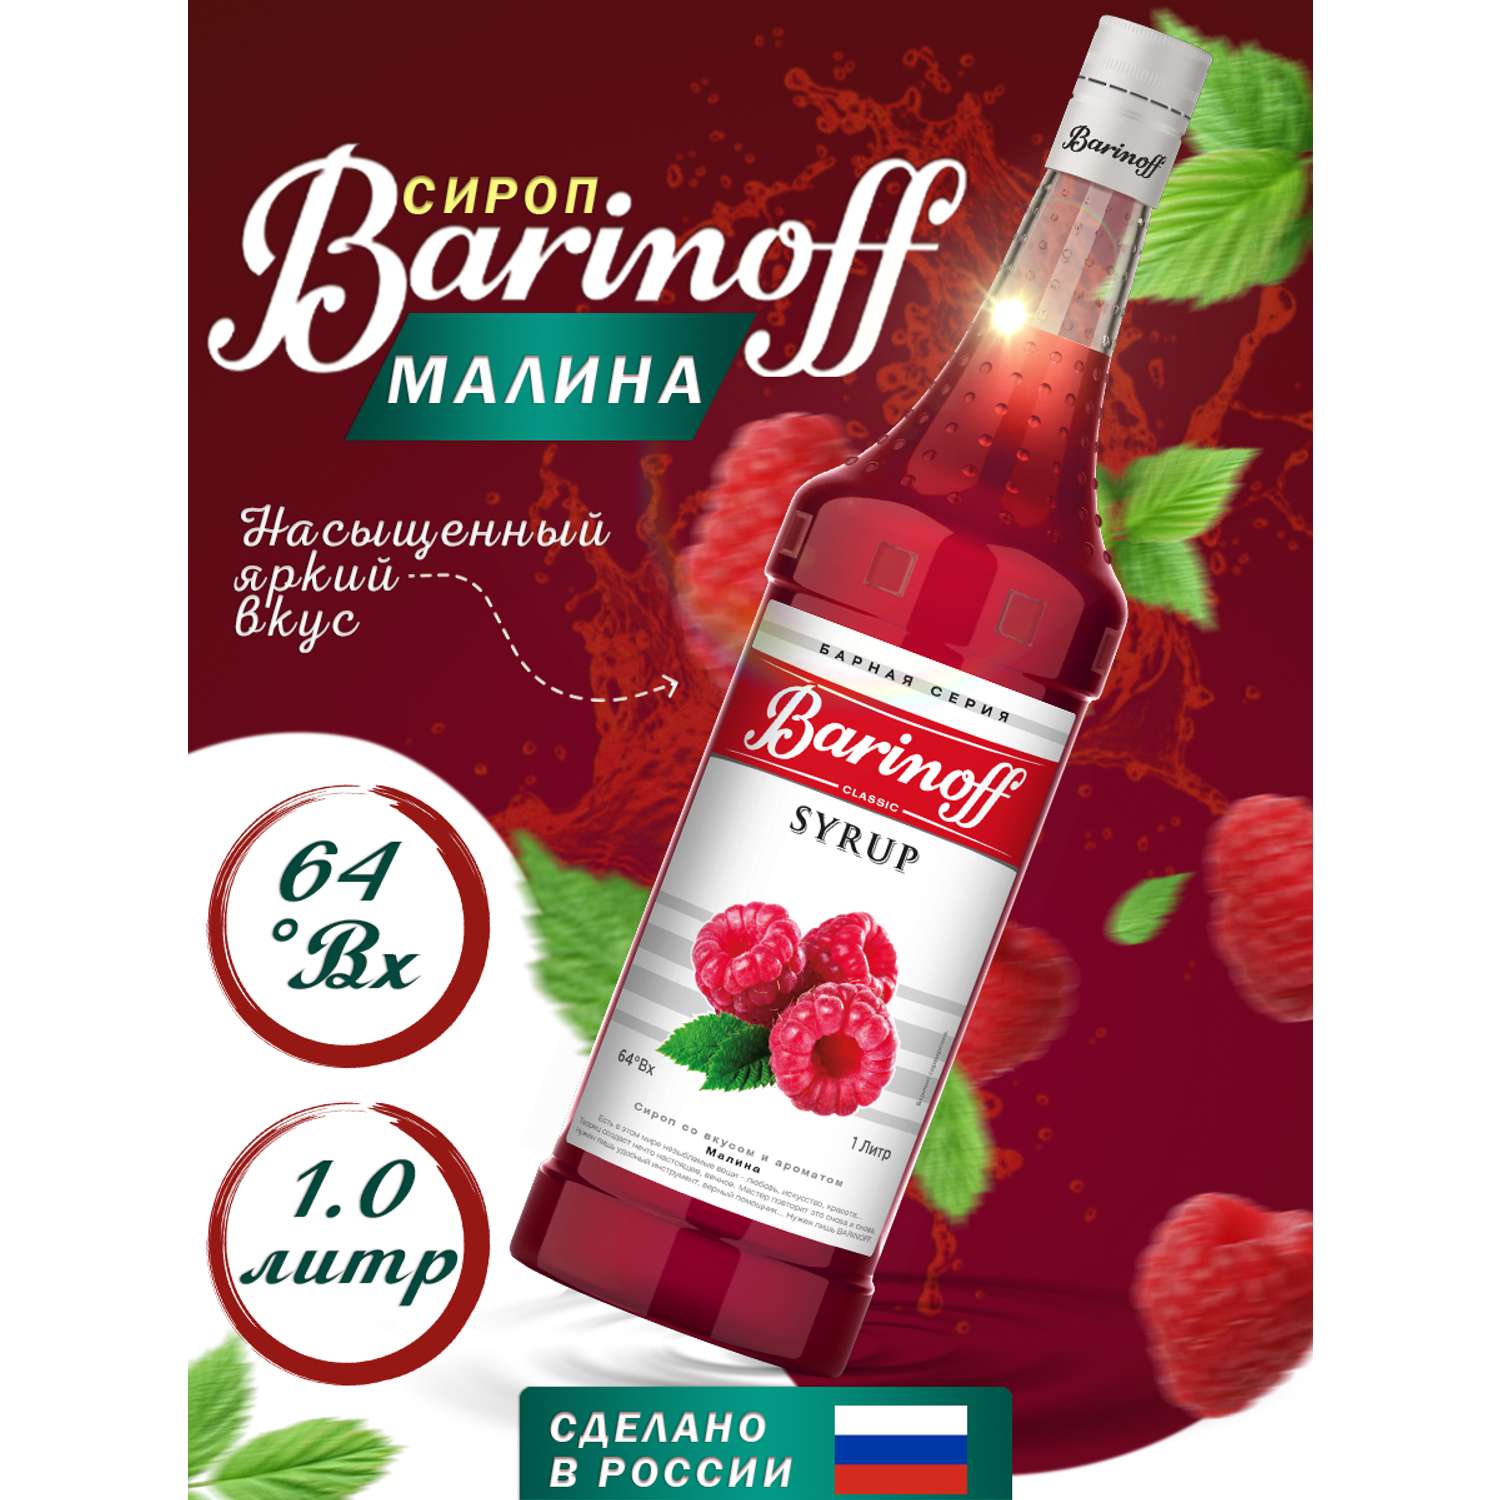 Сироп Barinoff Малина для кофе и коктелей 1л - фото 1